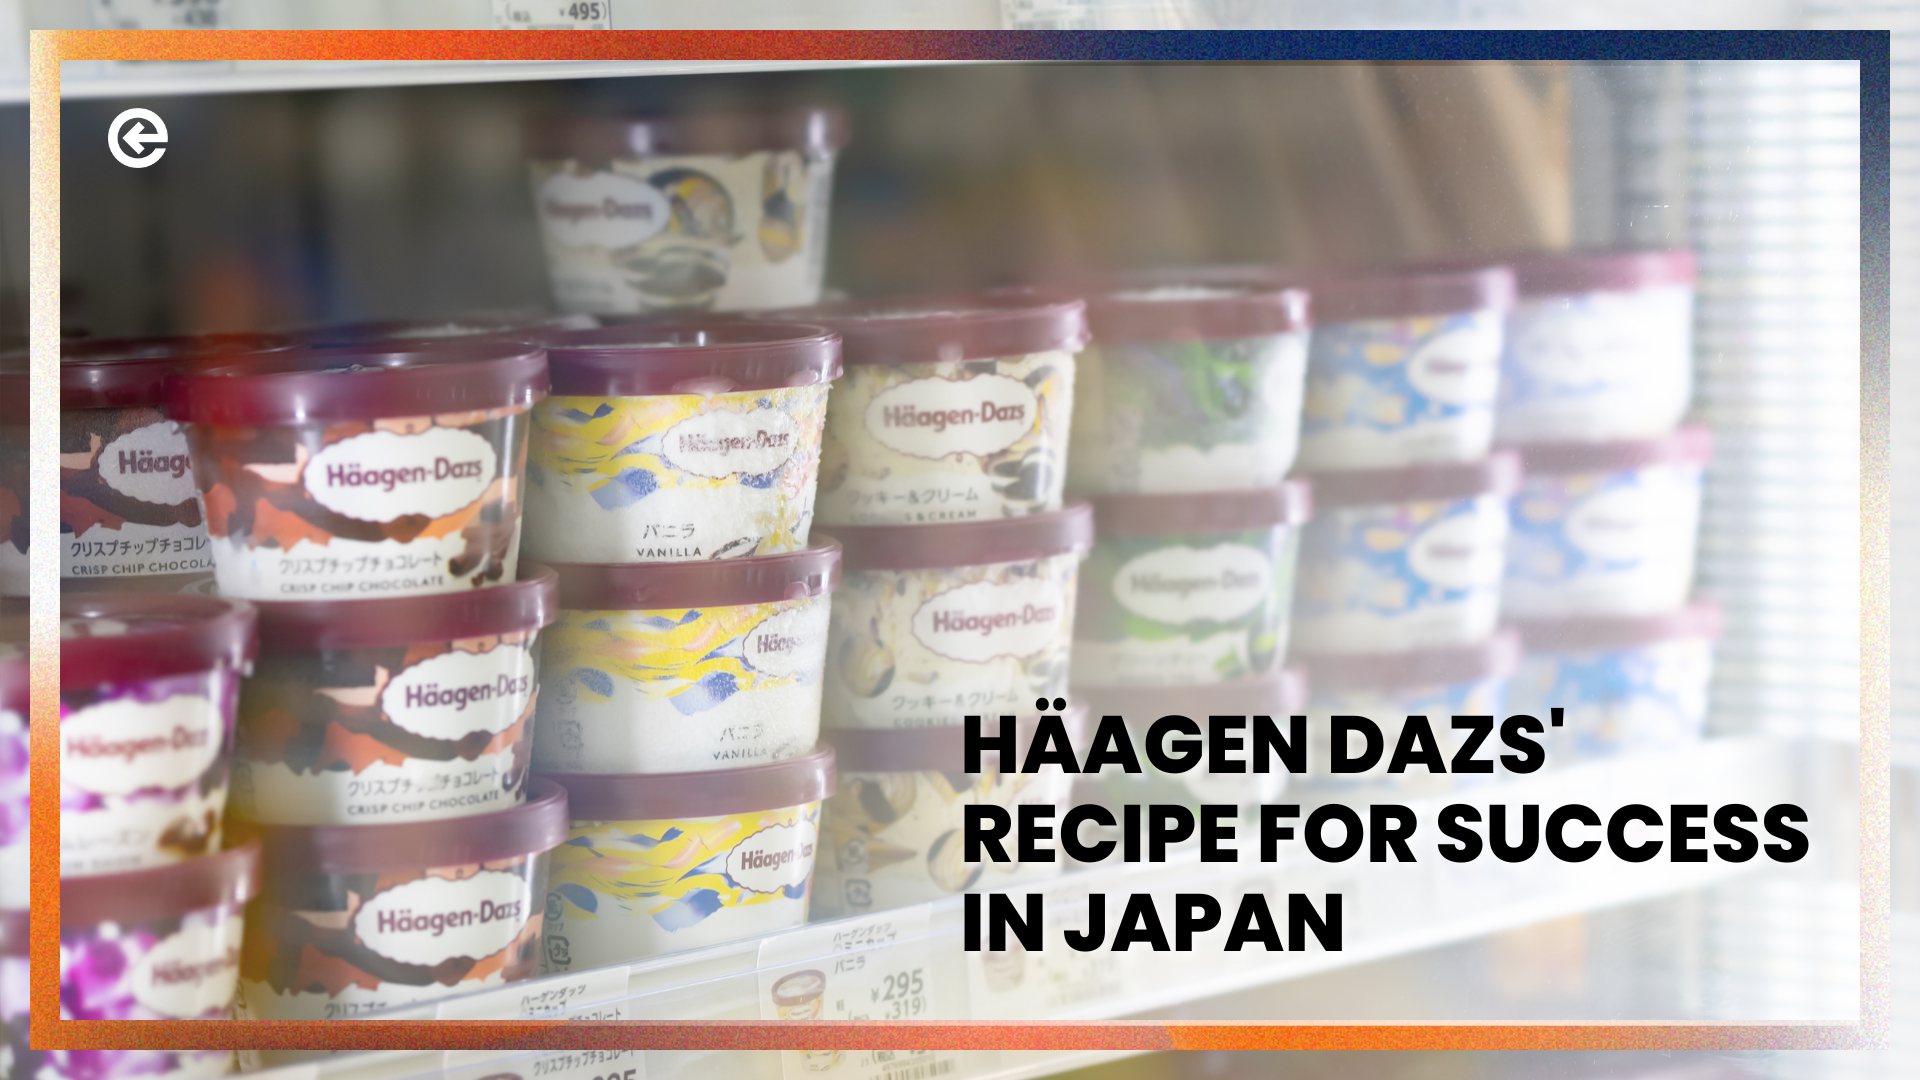 जापान में सफलता के लिए हैगेन डेज़ की रेसिपी